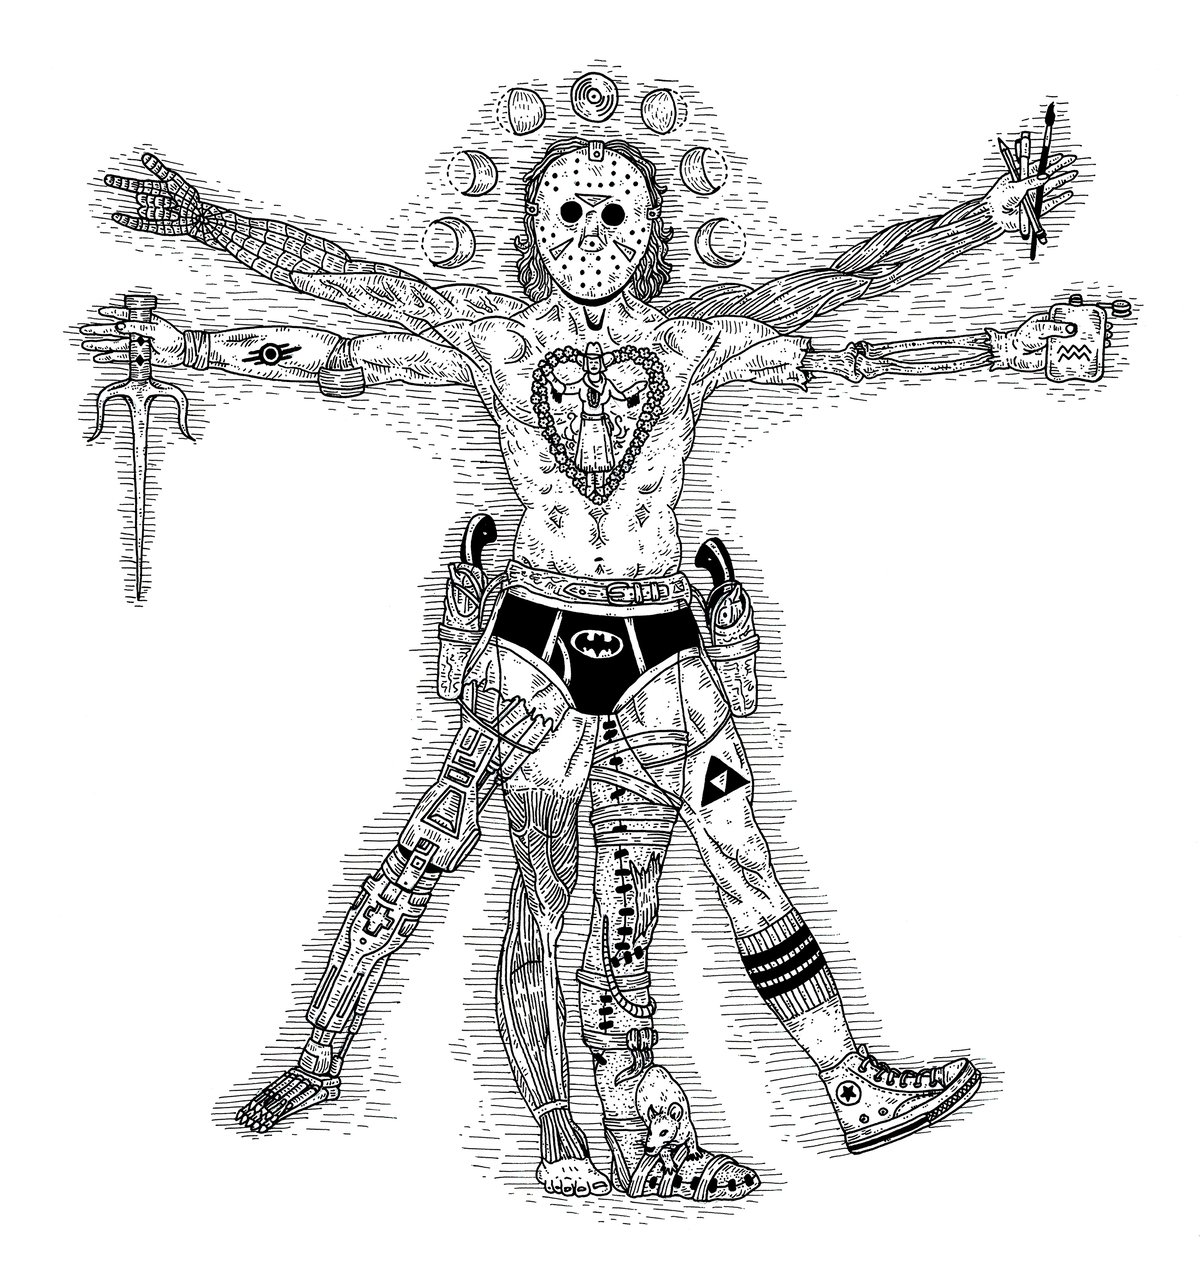 Image of The Modern Vitruvian Man